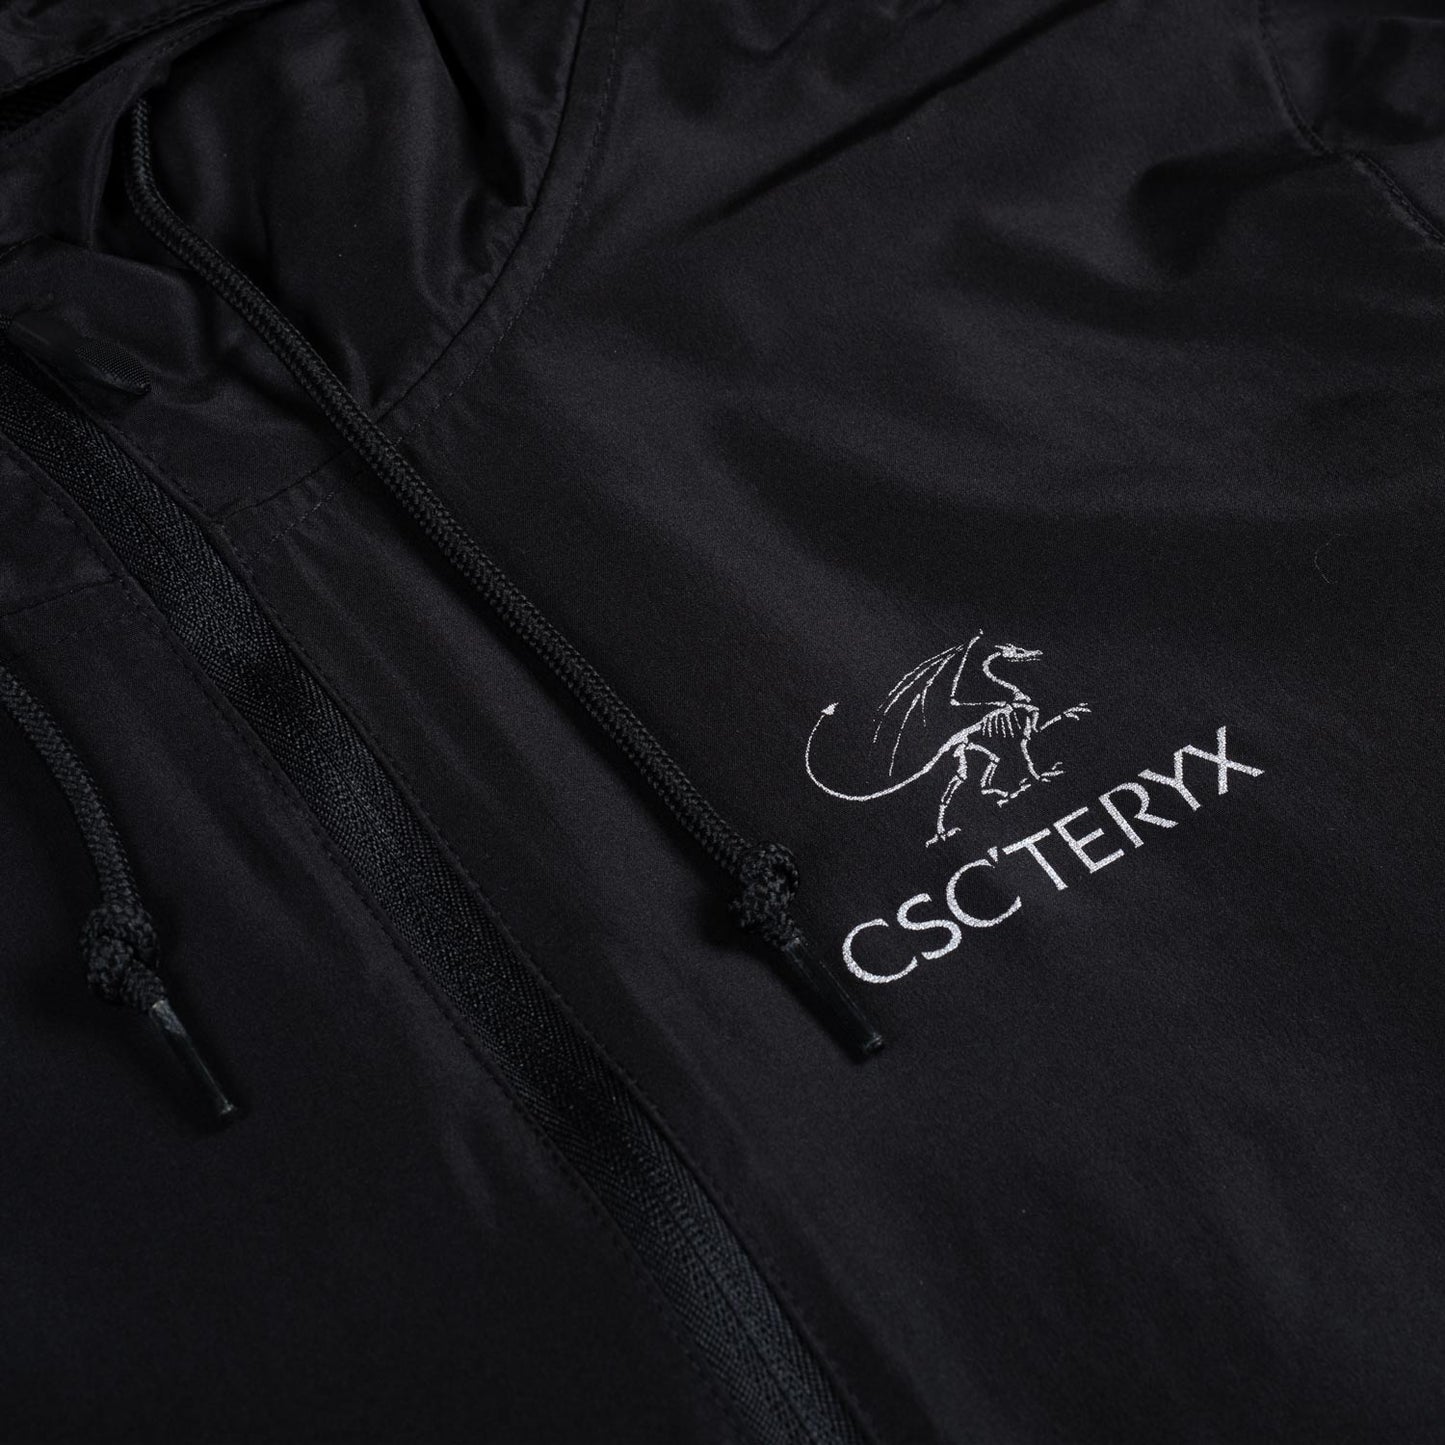 CSC 'Teryx' 1/4 Zip Jacket (Black)